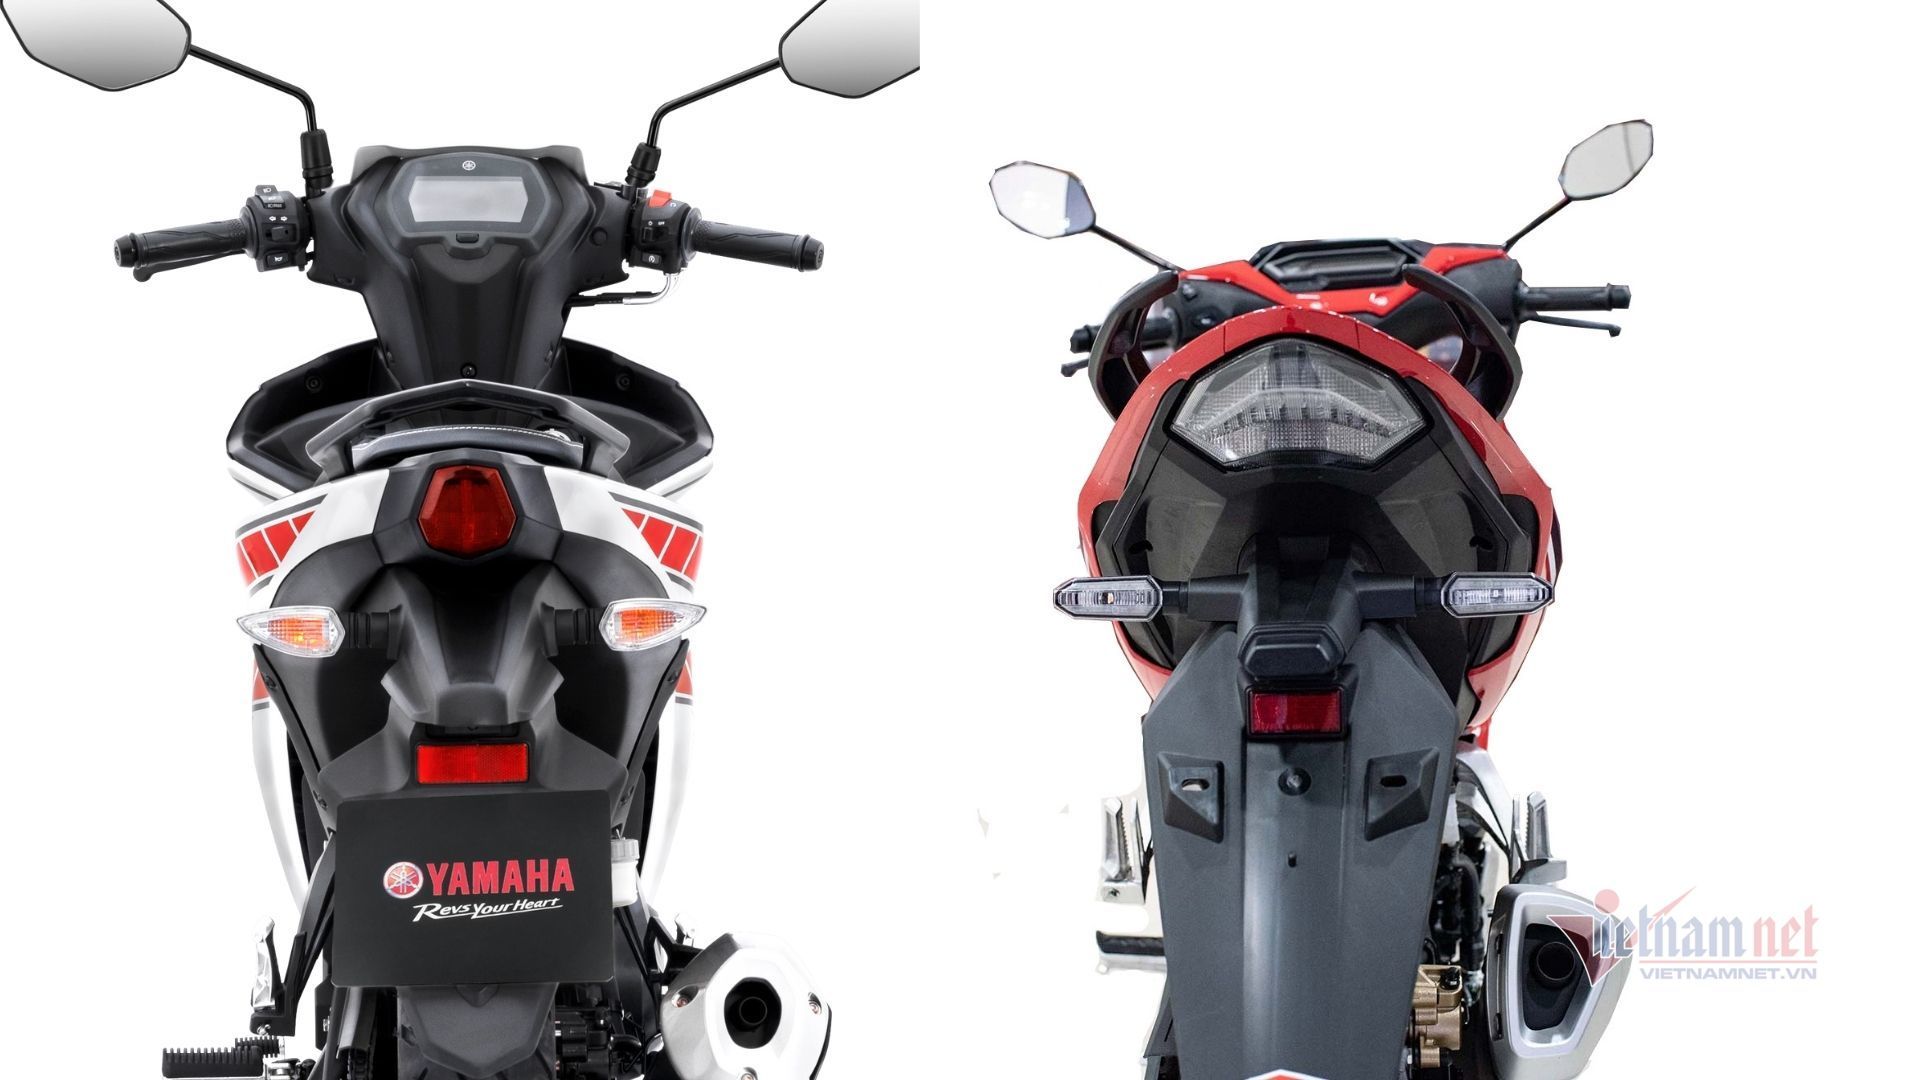 Với 50 triệu, chọn Yamaha Exciter bản giới hạn hay Honda Winner X đường đua?